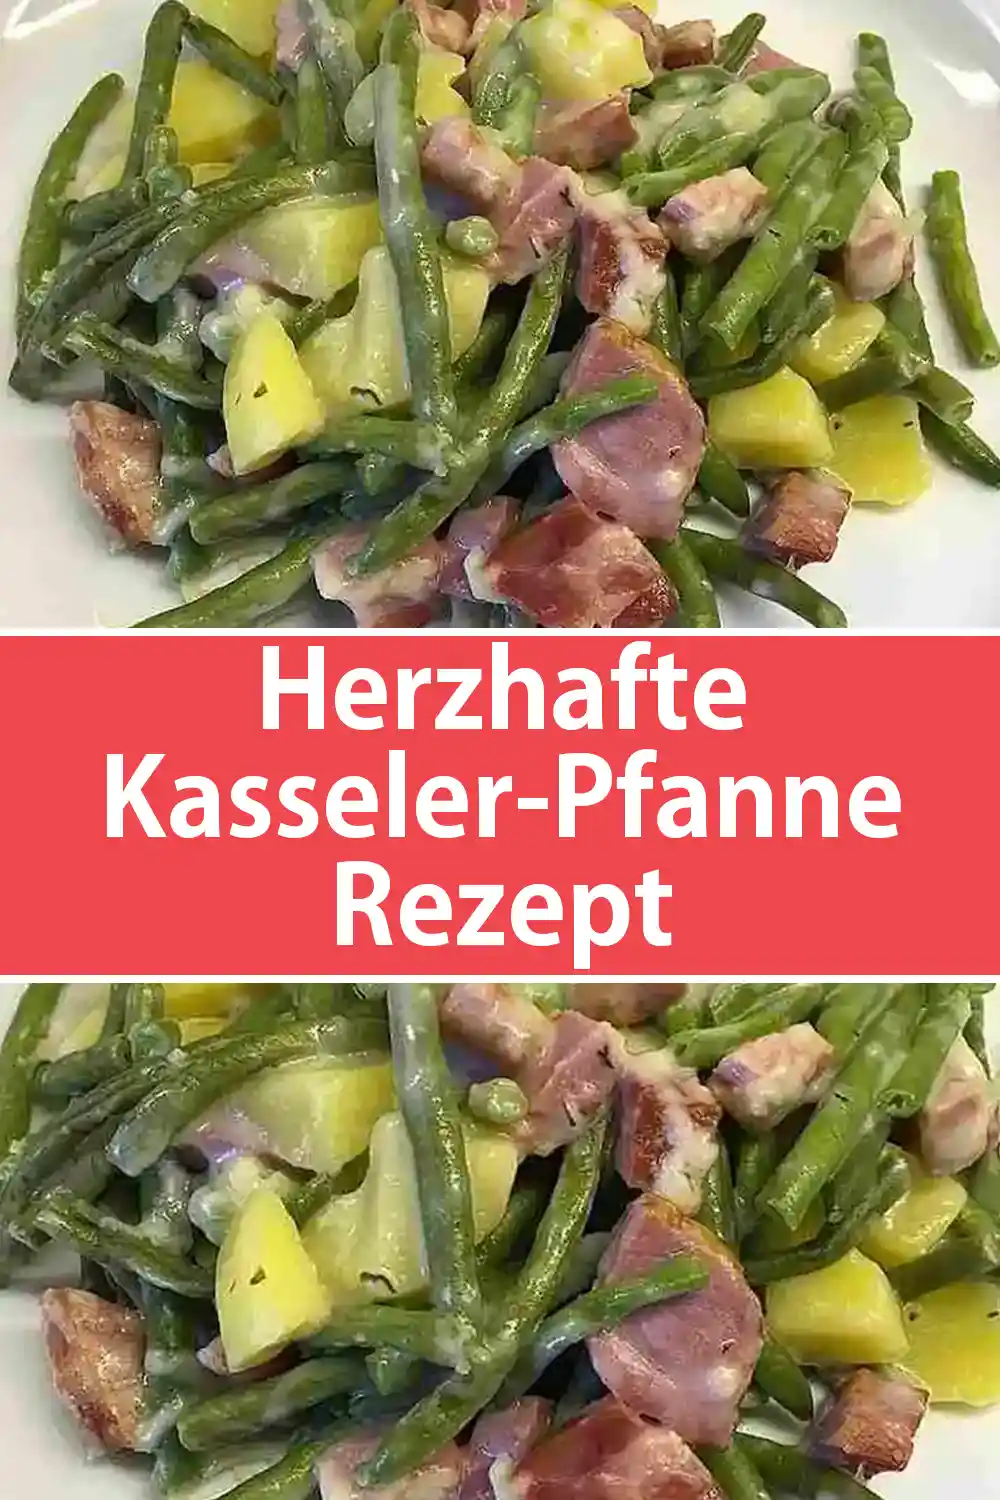 Herzhafte Kasseler-Pfanne Rezept